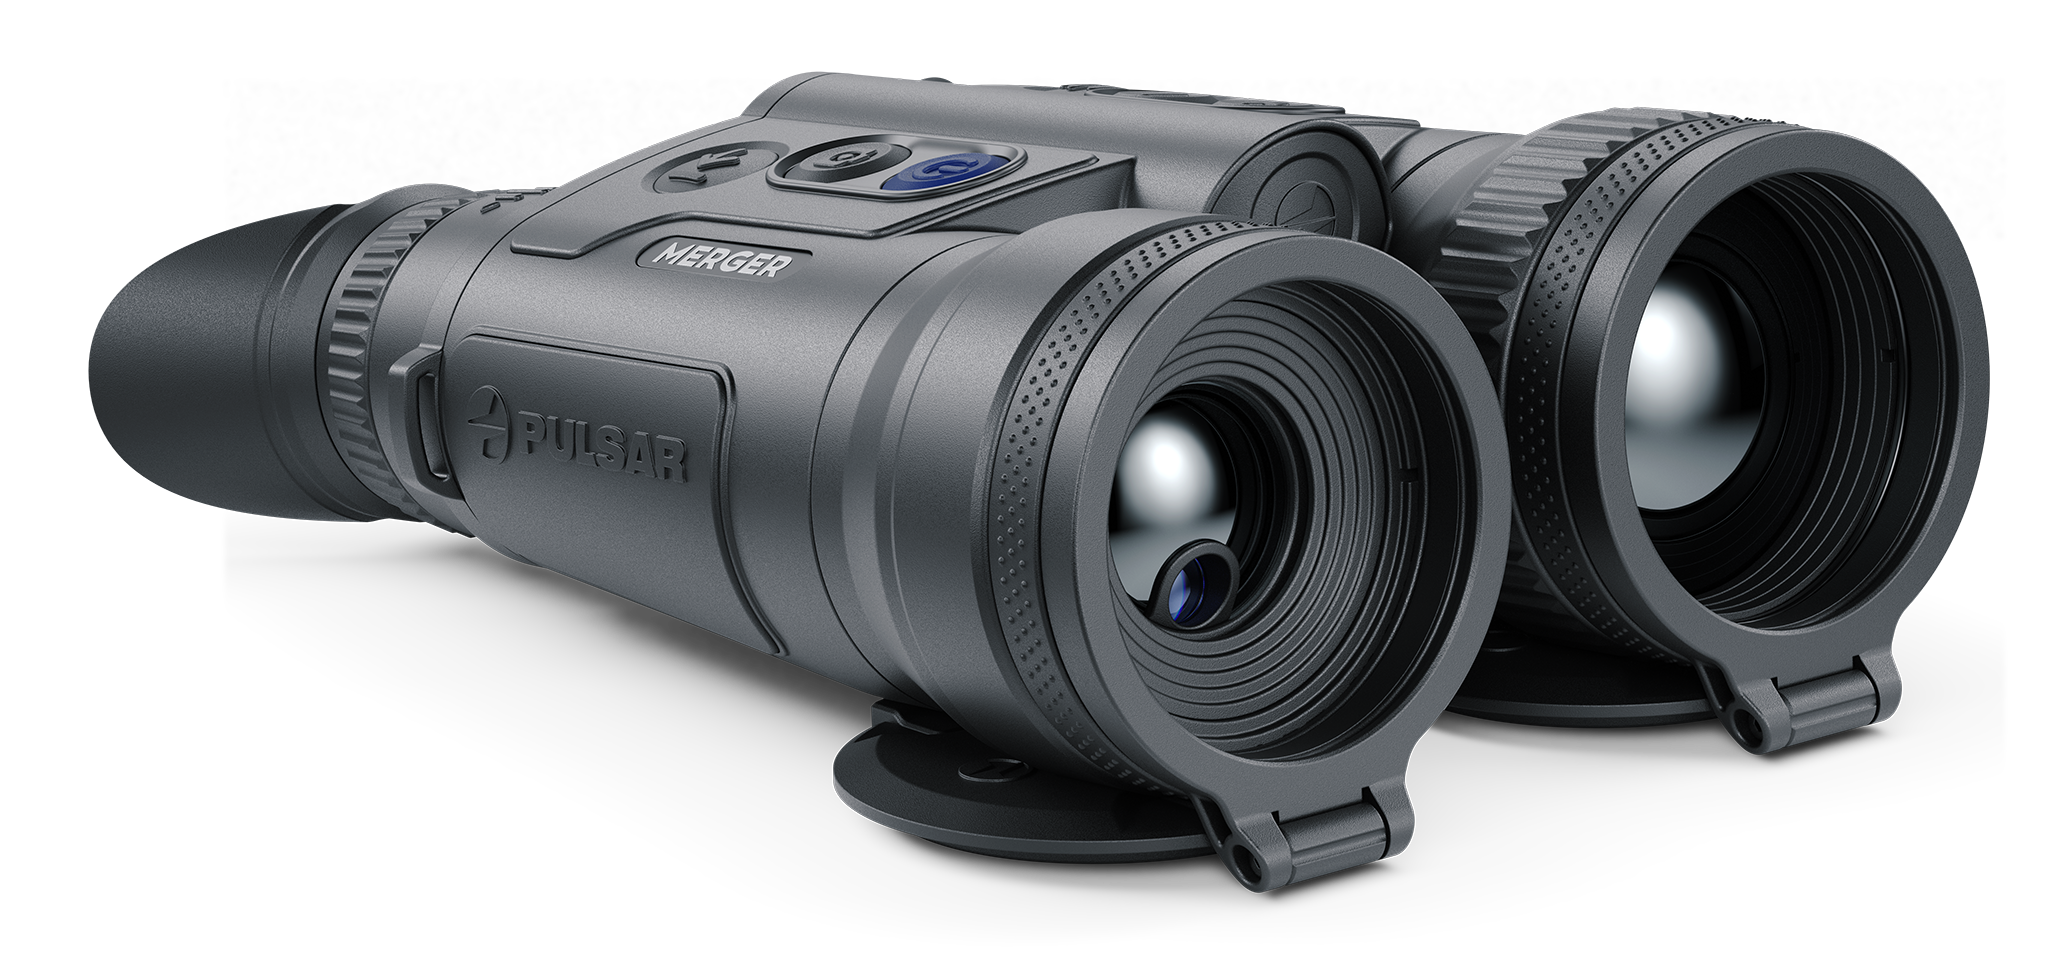 Pulsar Merger LRF XP50 Thermal Binocular